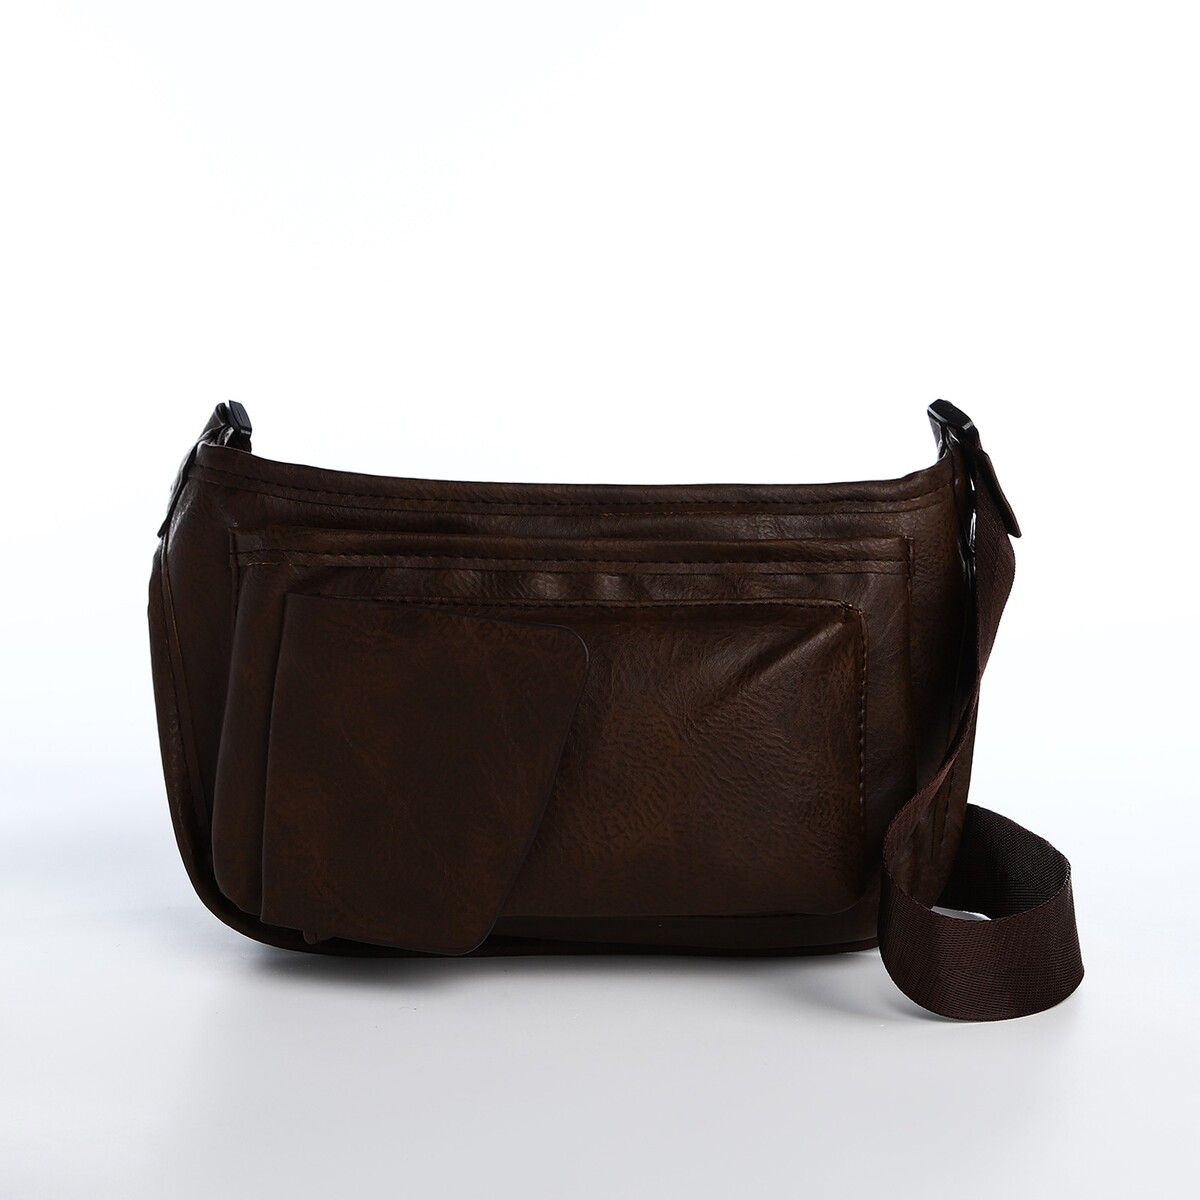 Поясная сумка на молнии, 3 наружных кармана, цвет коричневый сумка поясная на молнии 3 наружных кармана